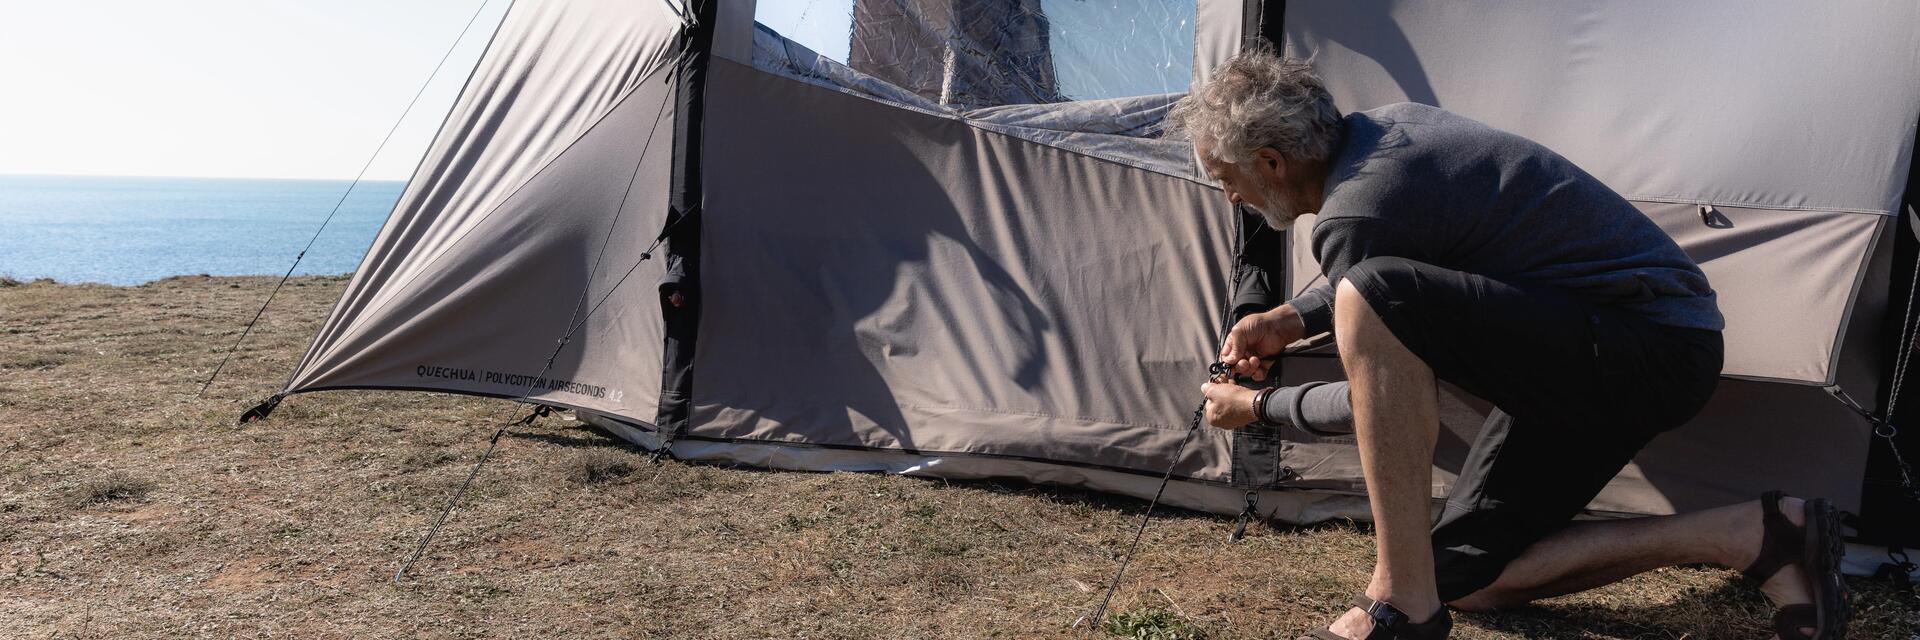 Mężczyzna rozkładający namiot turystyczny na płaskim podłożu